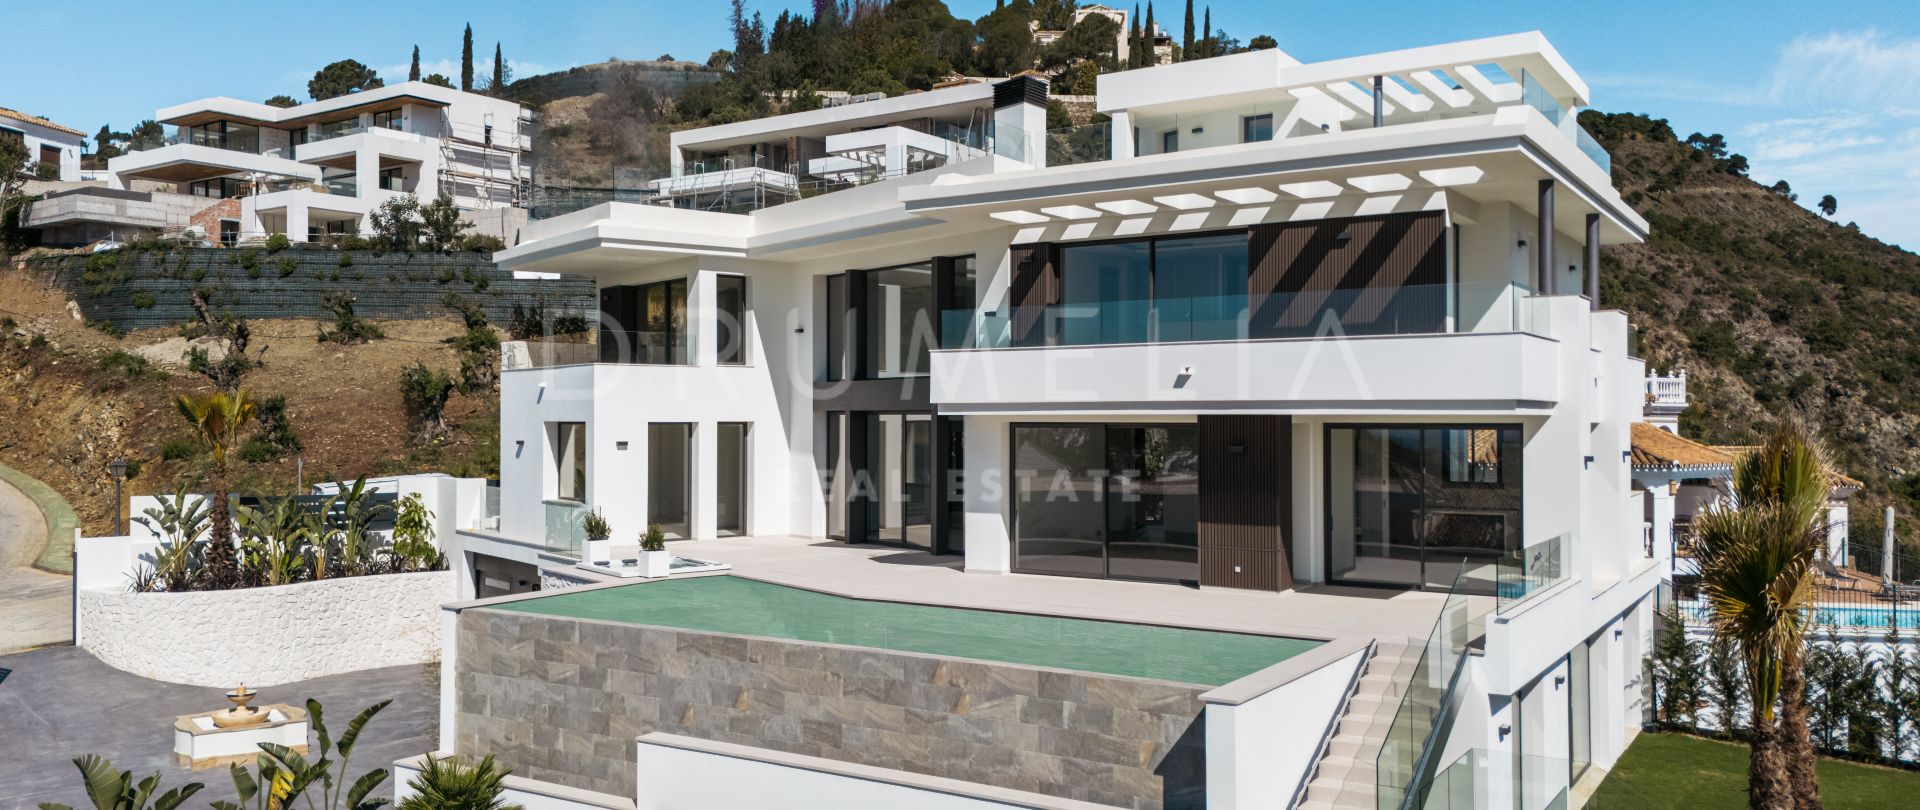 Lomas 10 - Moderne, splitter ny villa i prestisjetunge Lomas de la Quinta, Marbella, med fantastisk utsikt over havet og fjellene.